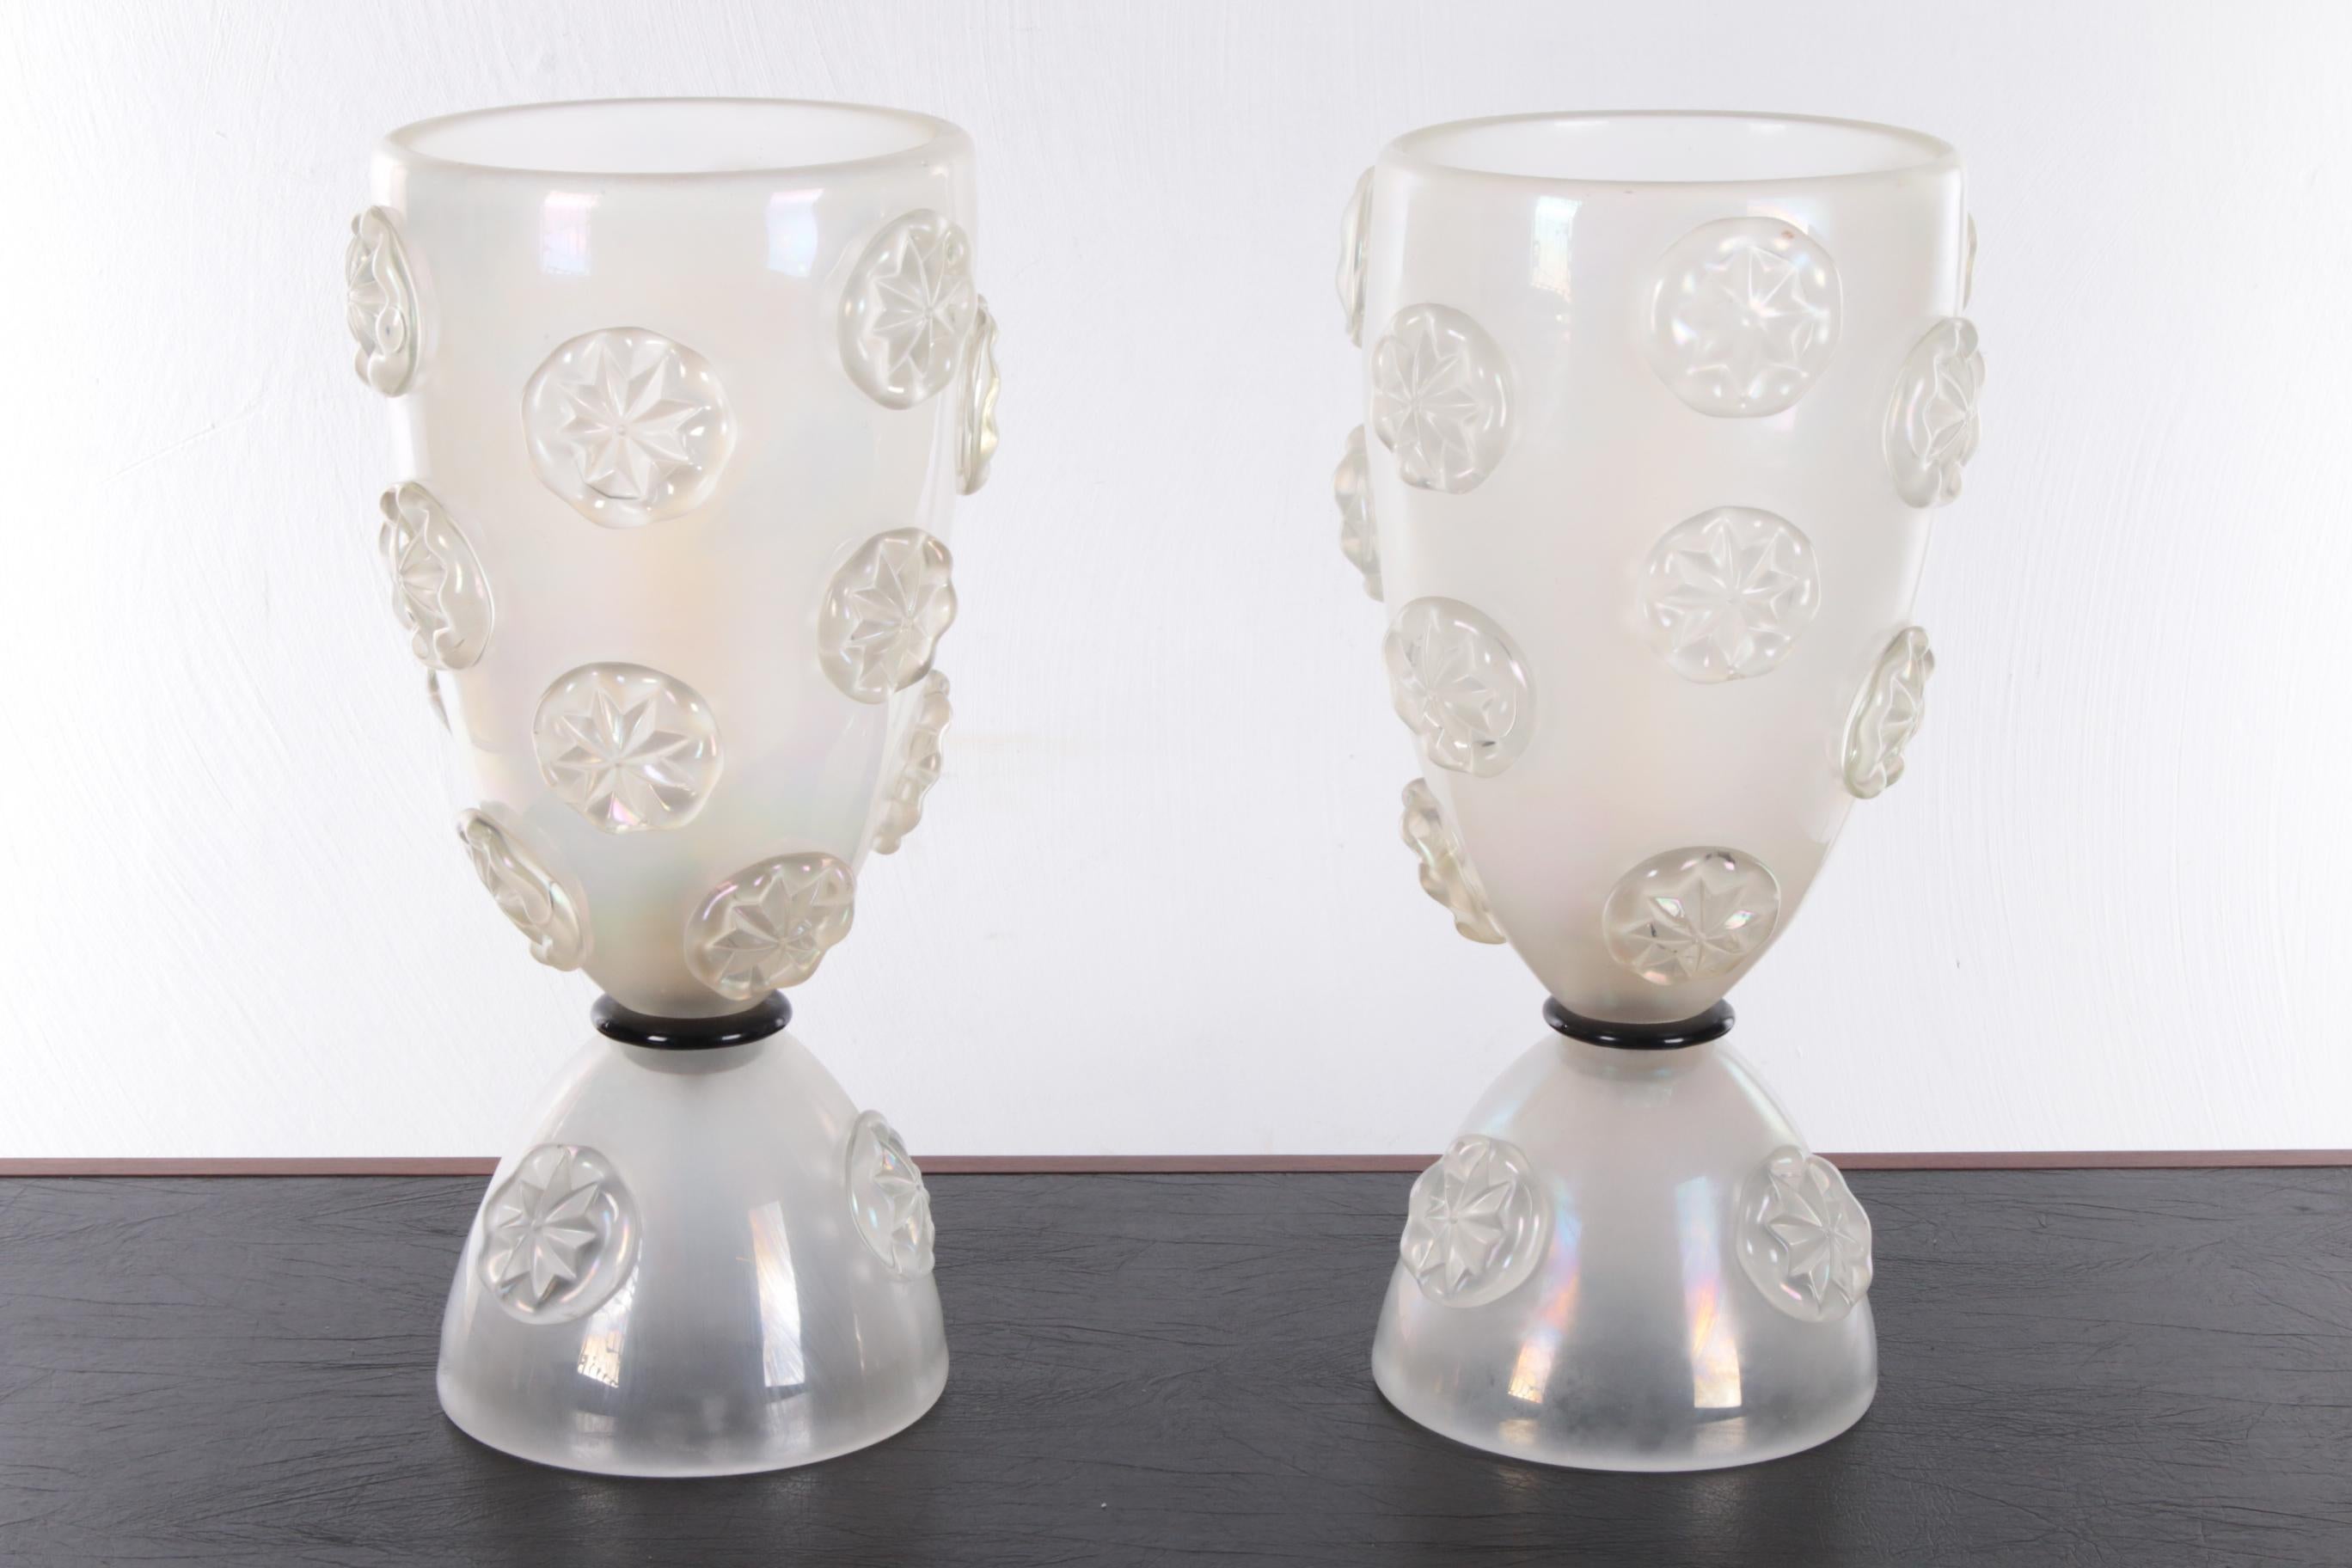 Design Satz Tischlampen aus geblasenem Muranoglas von Barovier & Toso, 1950er Jahre


Wunderschöner Satz von 2 Barovier & Toso Tischlampen aus Muranoglas. Man beachte die schönen heißverfestigten, gestreckten Tropfen. Eine überragende hellweiße